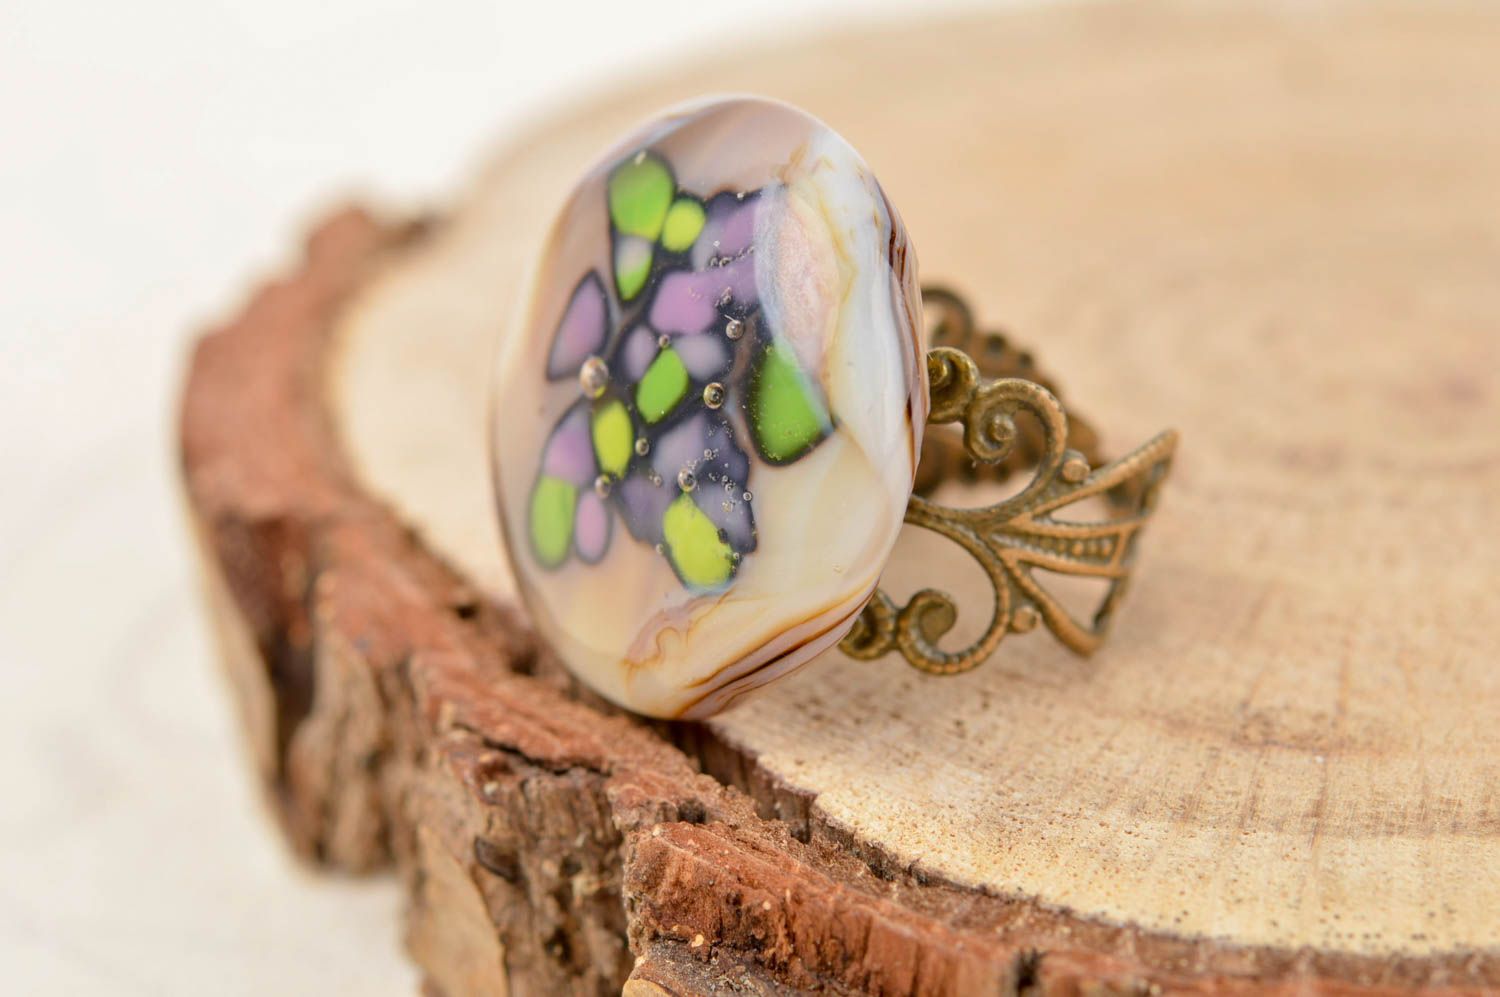 Unusual handmade glass ring handmade accessories for girls artisan jewelry photo 1